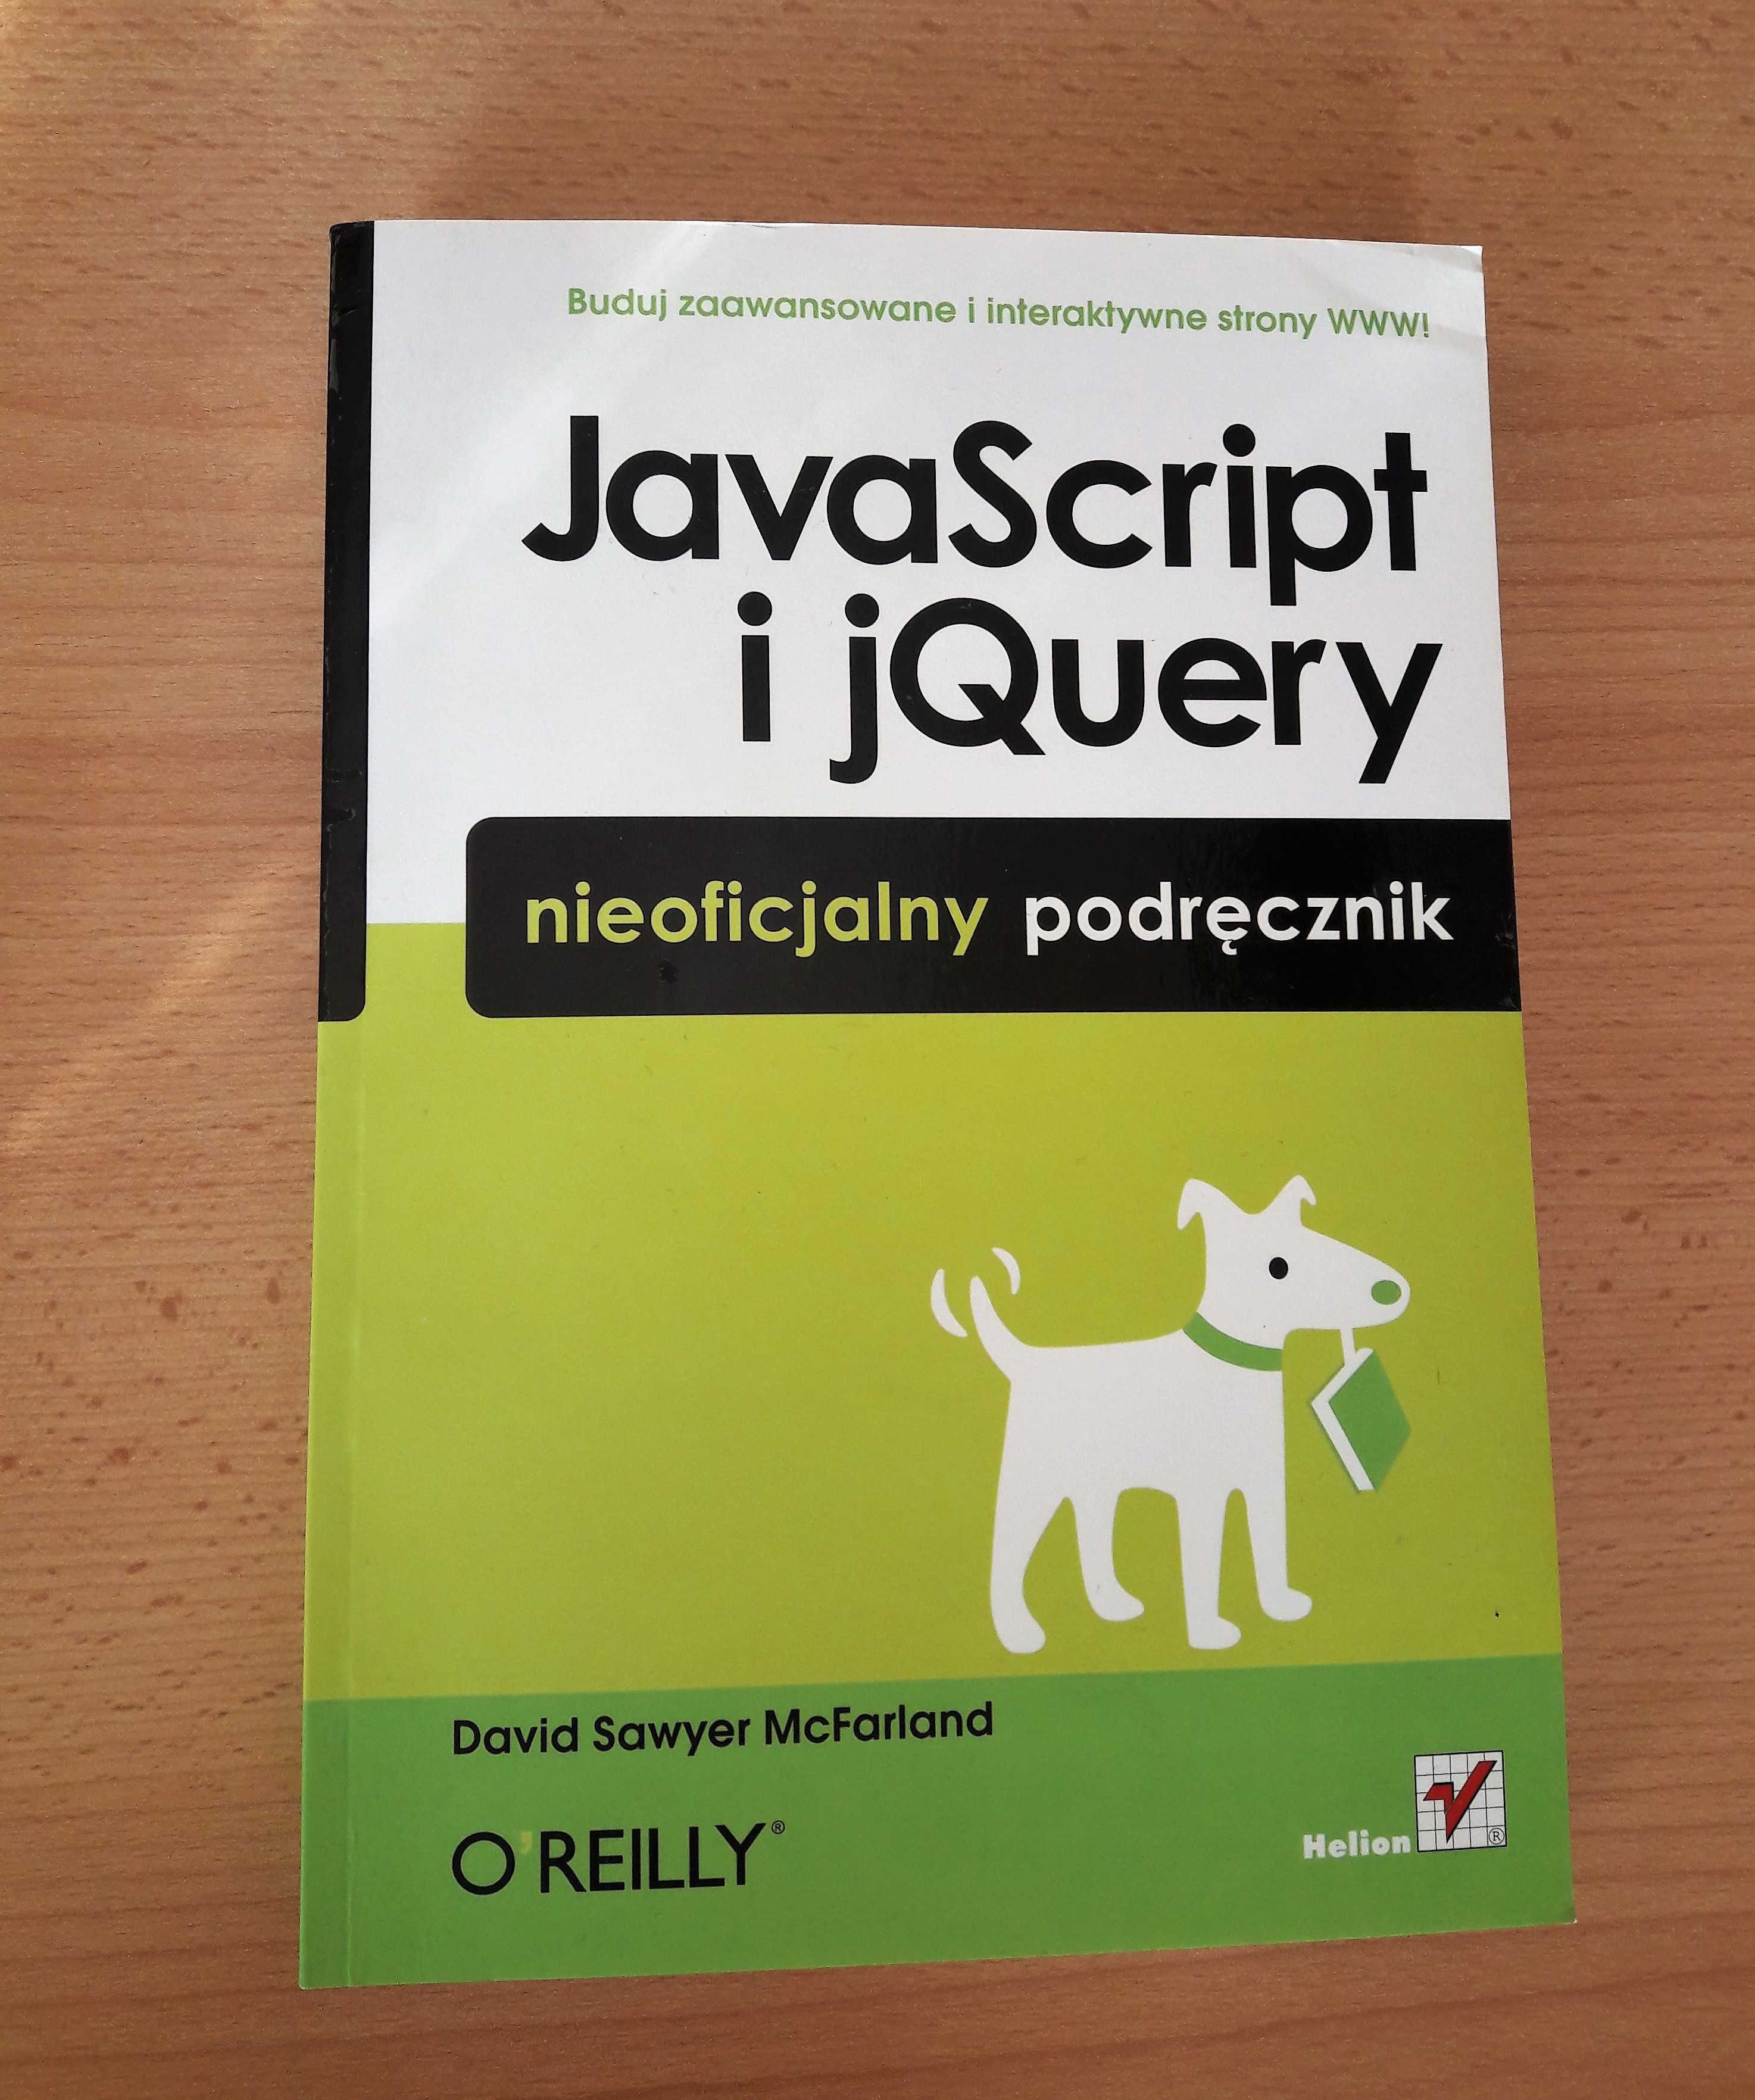 JavaScript i jQuery - przewodnik - McFarland, O'REILLY, Helion, nowa